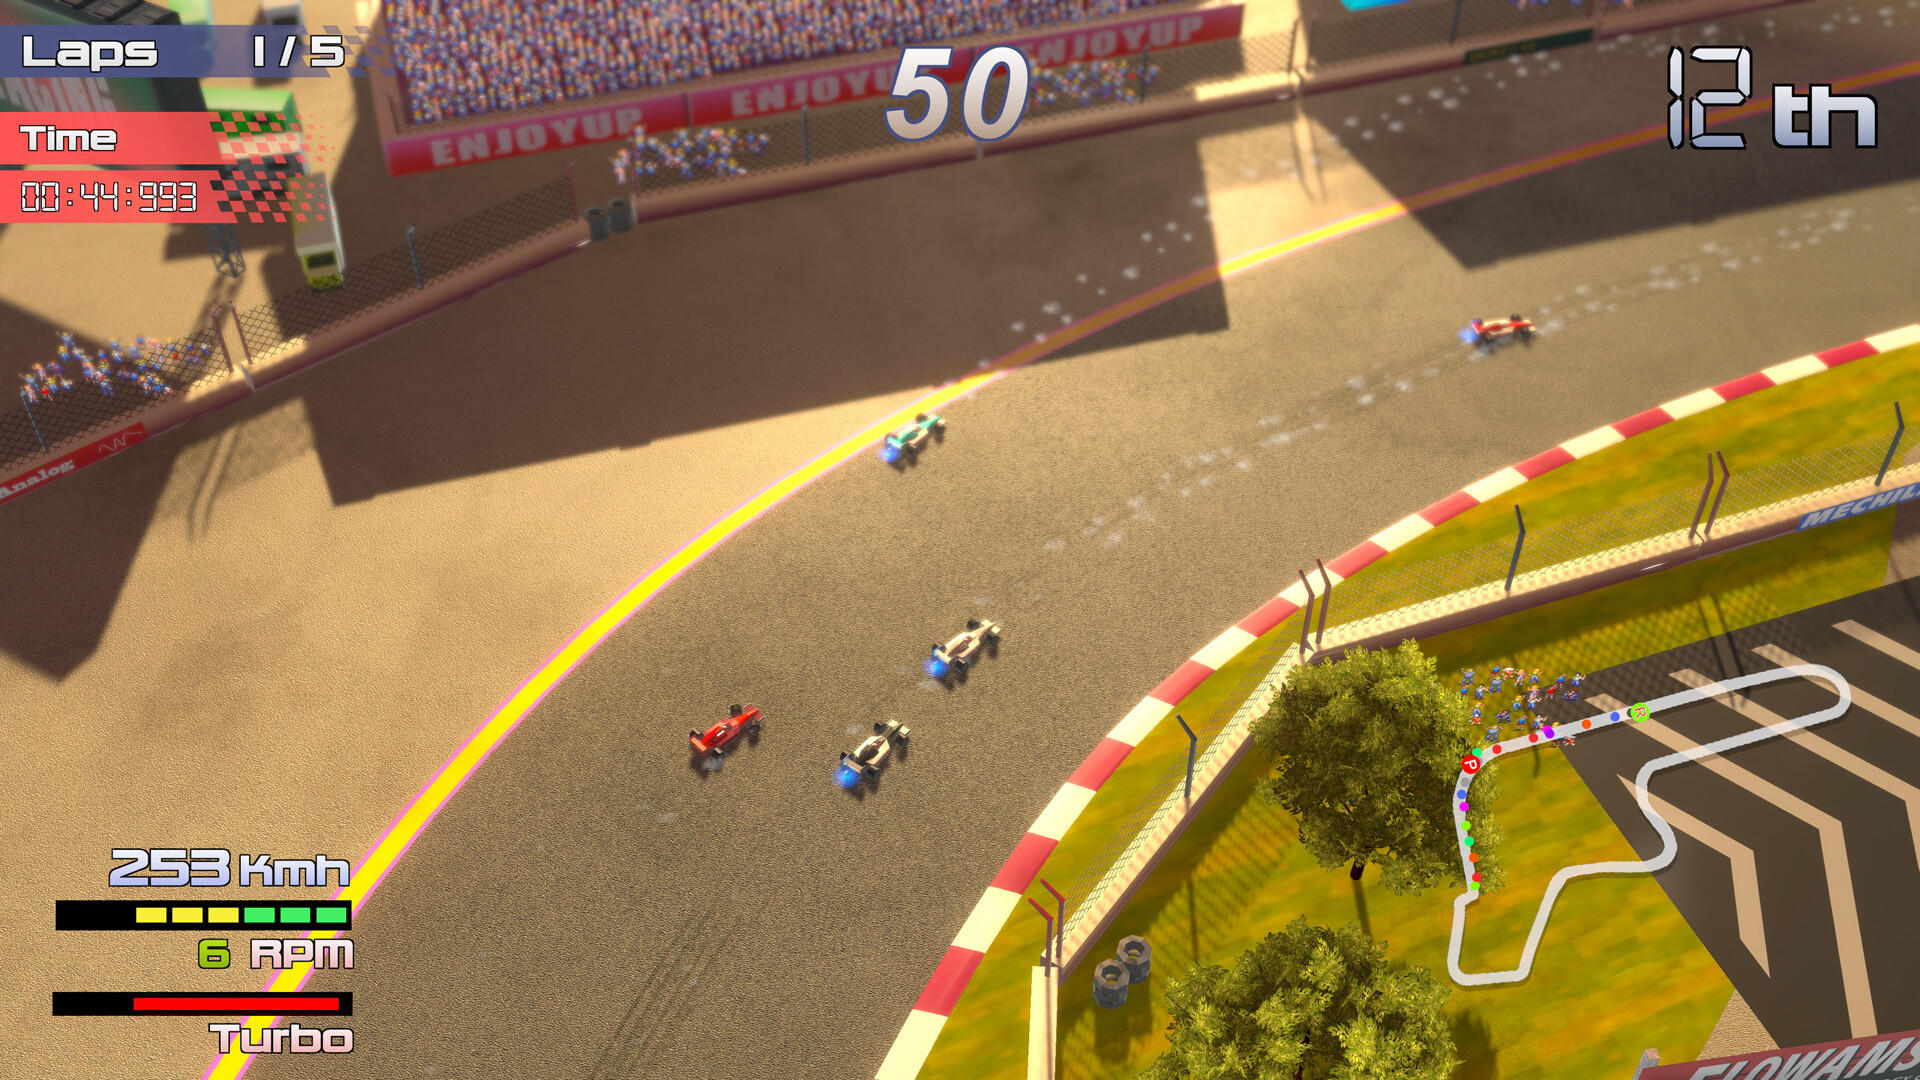 Screenshot 1 of Grand Prix Rock 'N Racing 